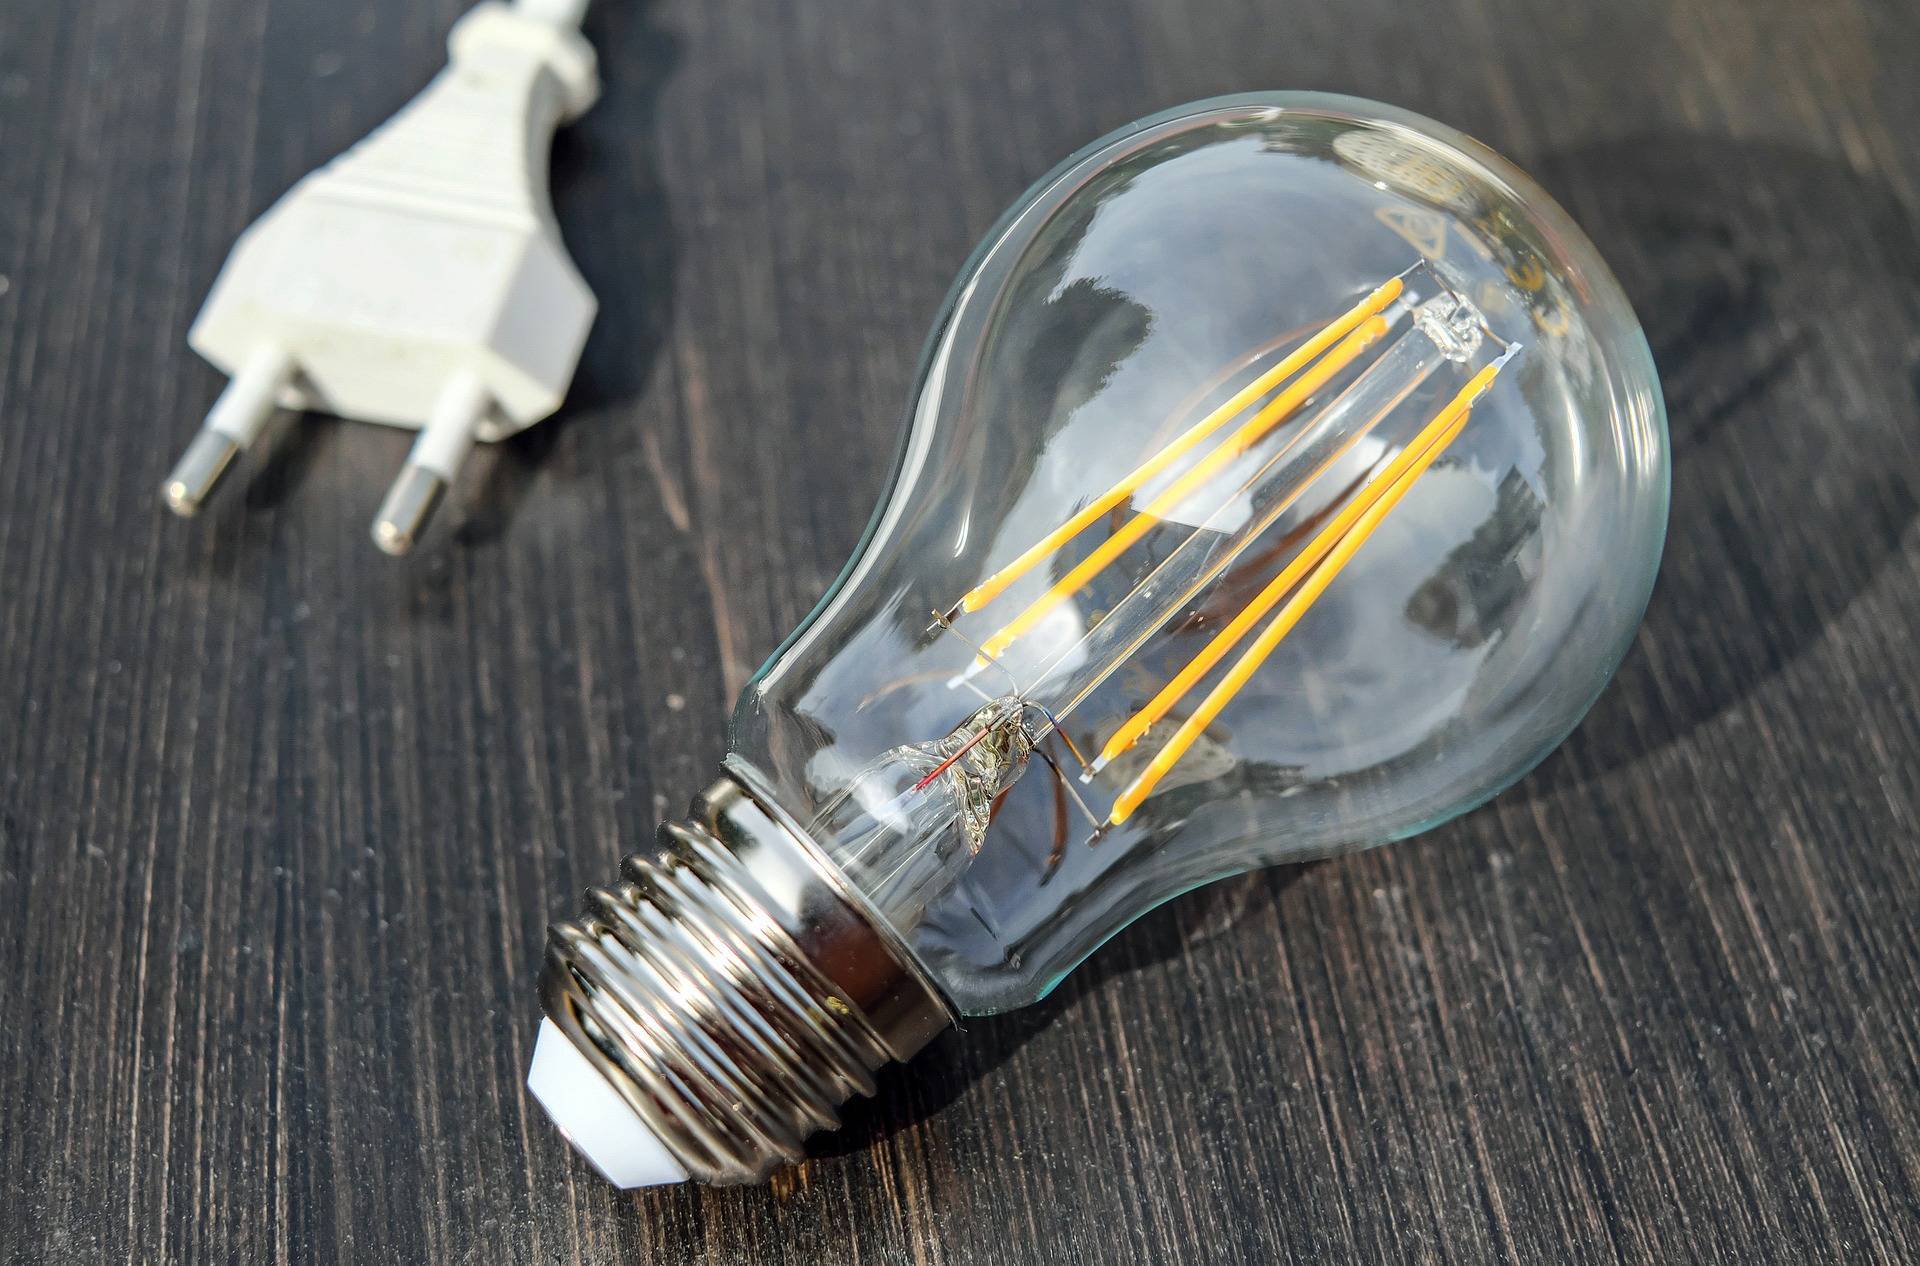 Consumatorii riscă să rămână fără energie electrică chiar dacă și-au plătit facturile. Cum se poate întâmpla acest lucru